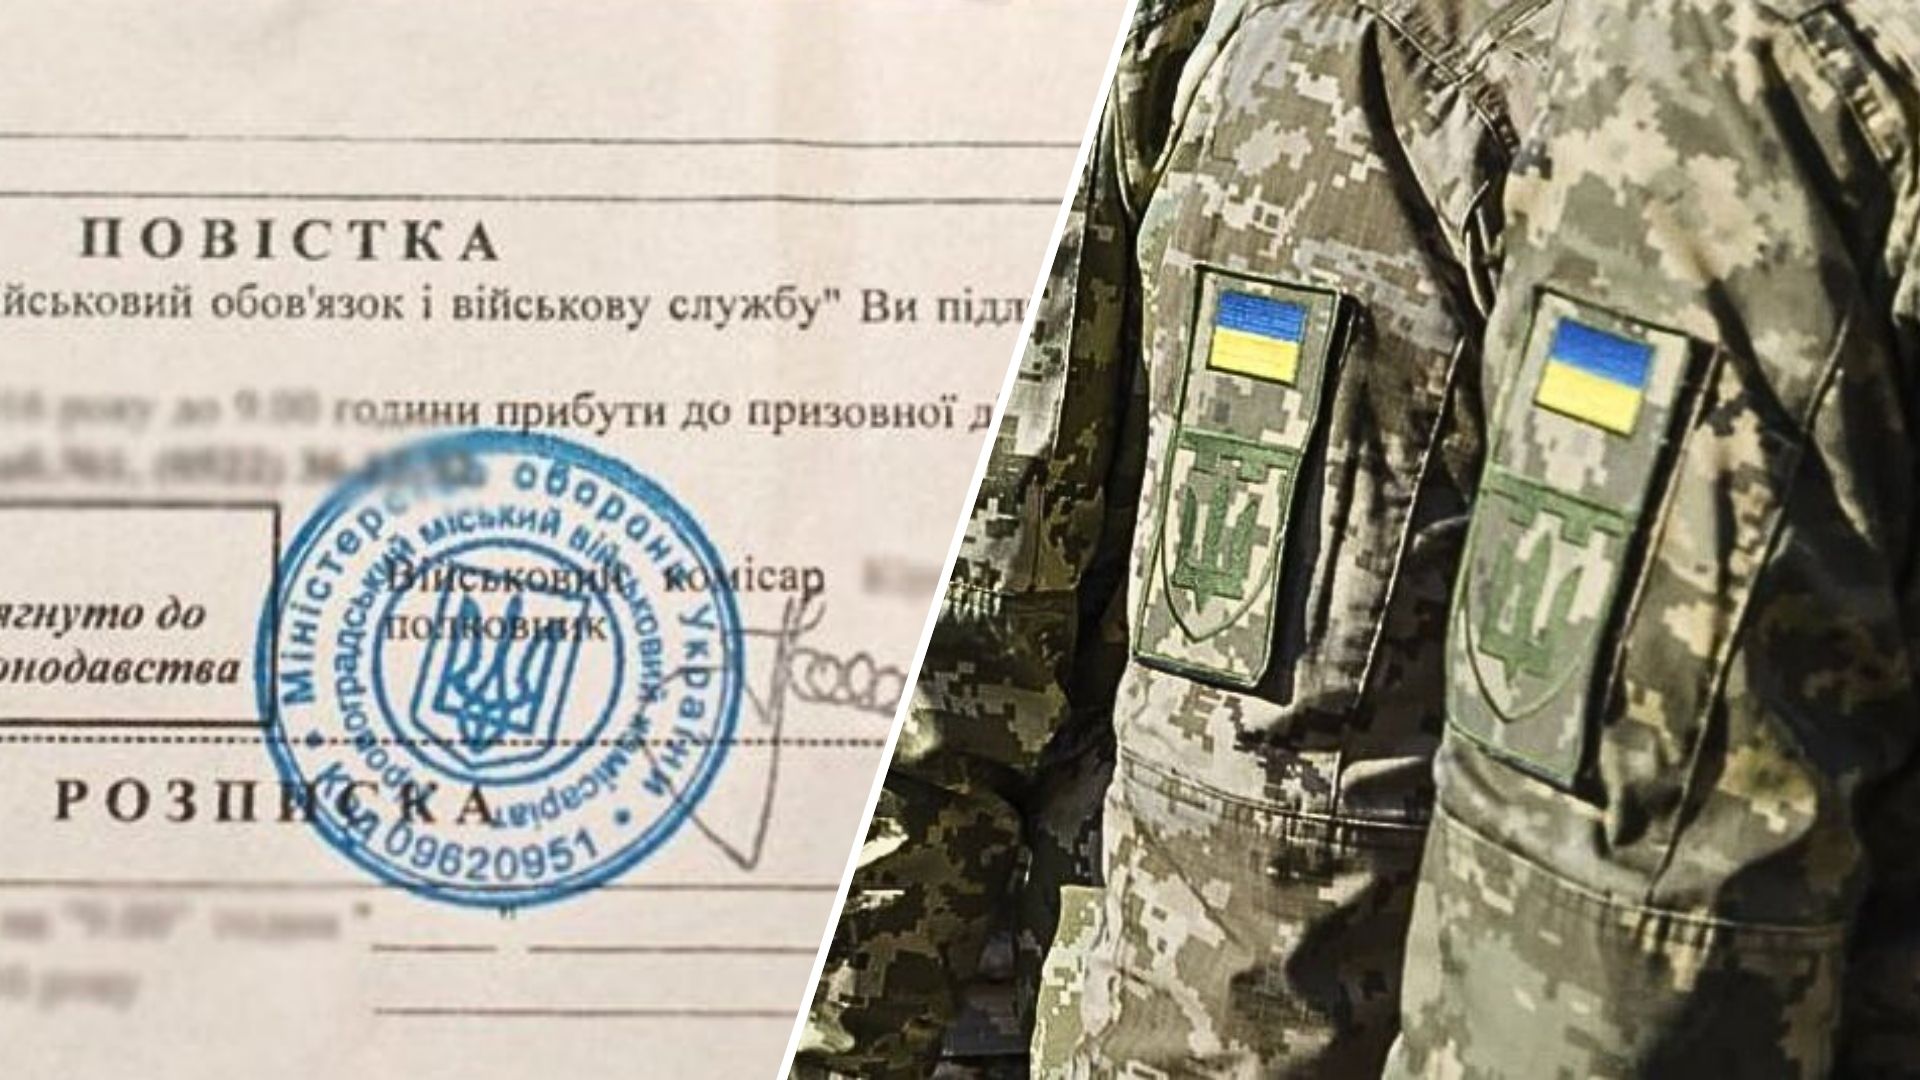 Министерство обороны Украины предоставило разъяснения по новому мобилизационному законопроекту No10449, который предусматривает ряд изменений в системе мобилизации и военной подготовки граждан.